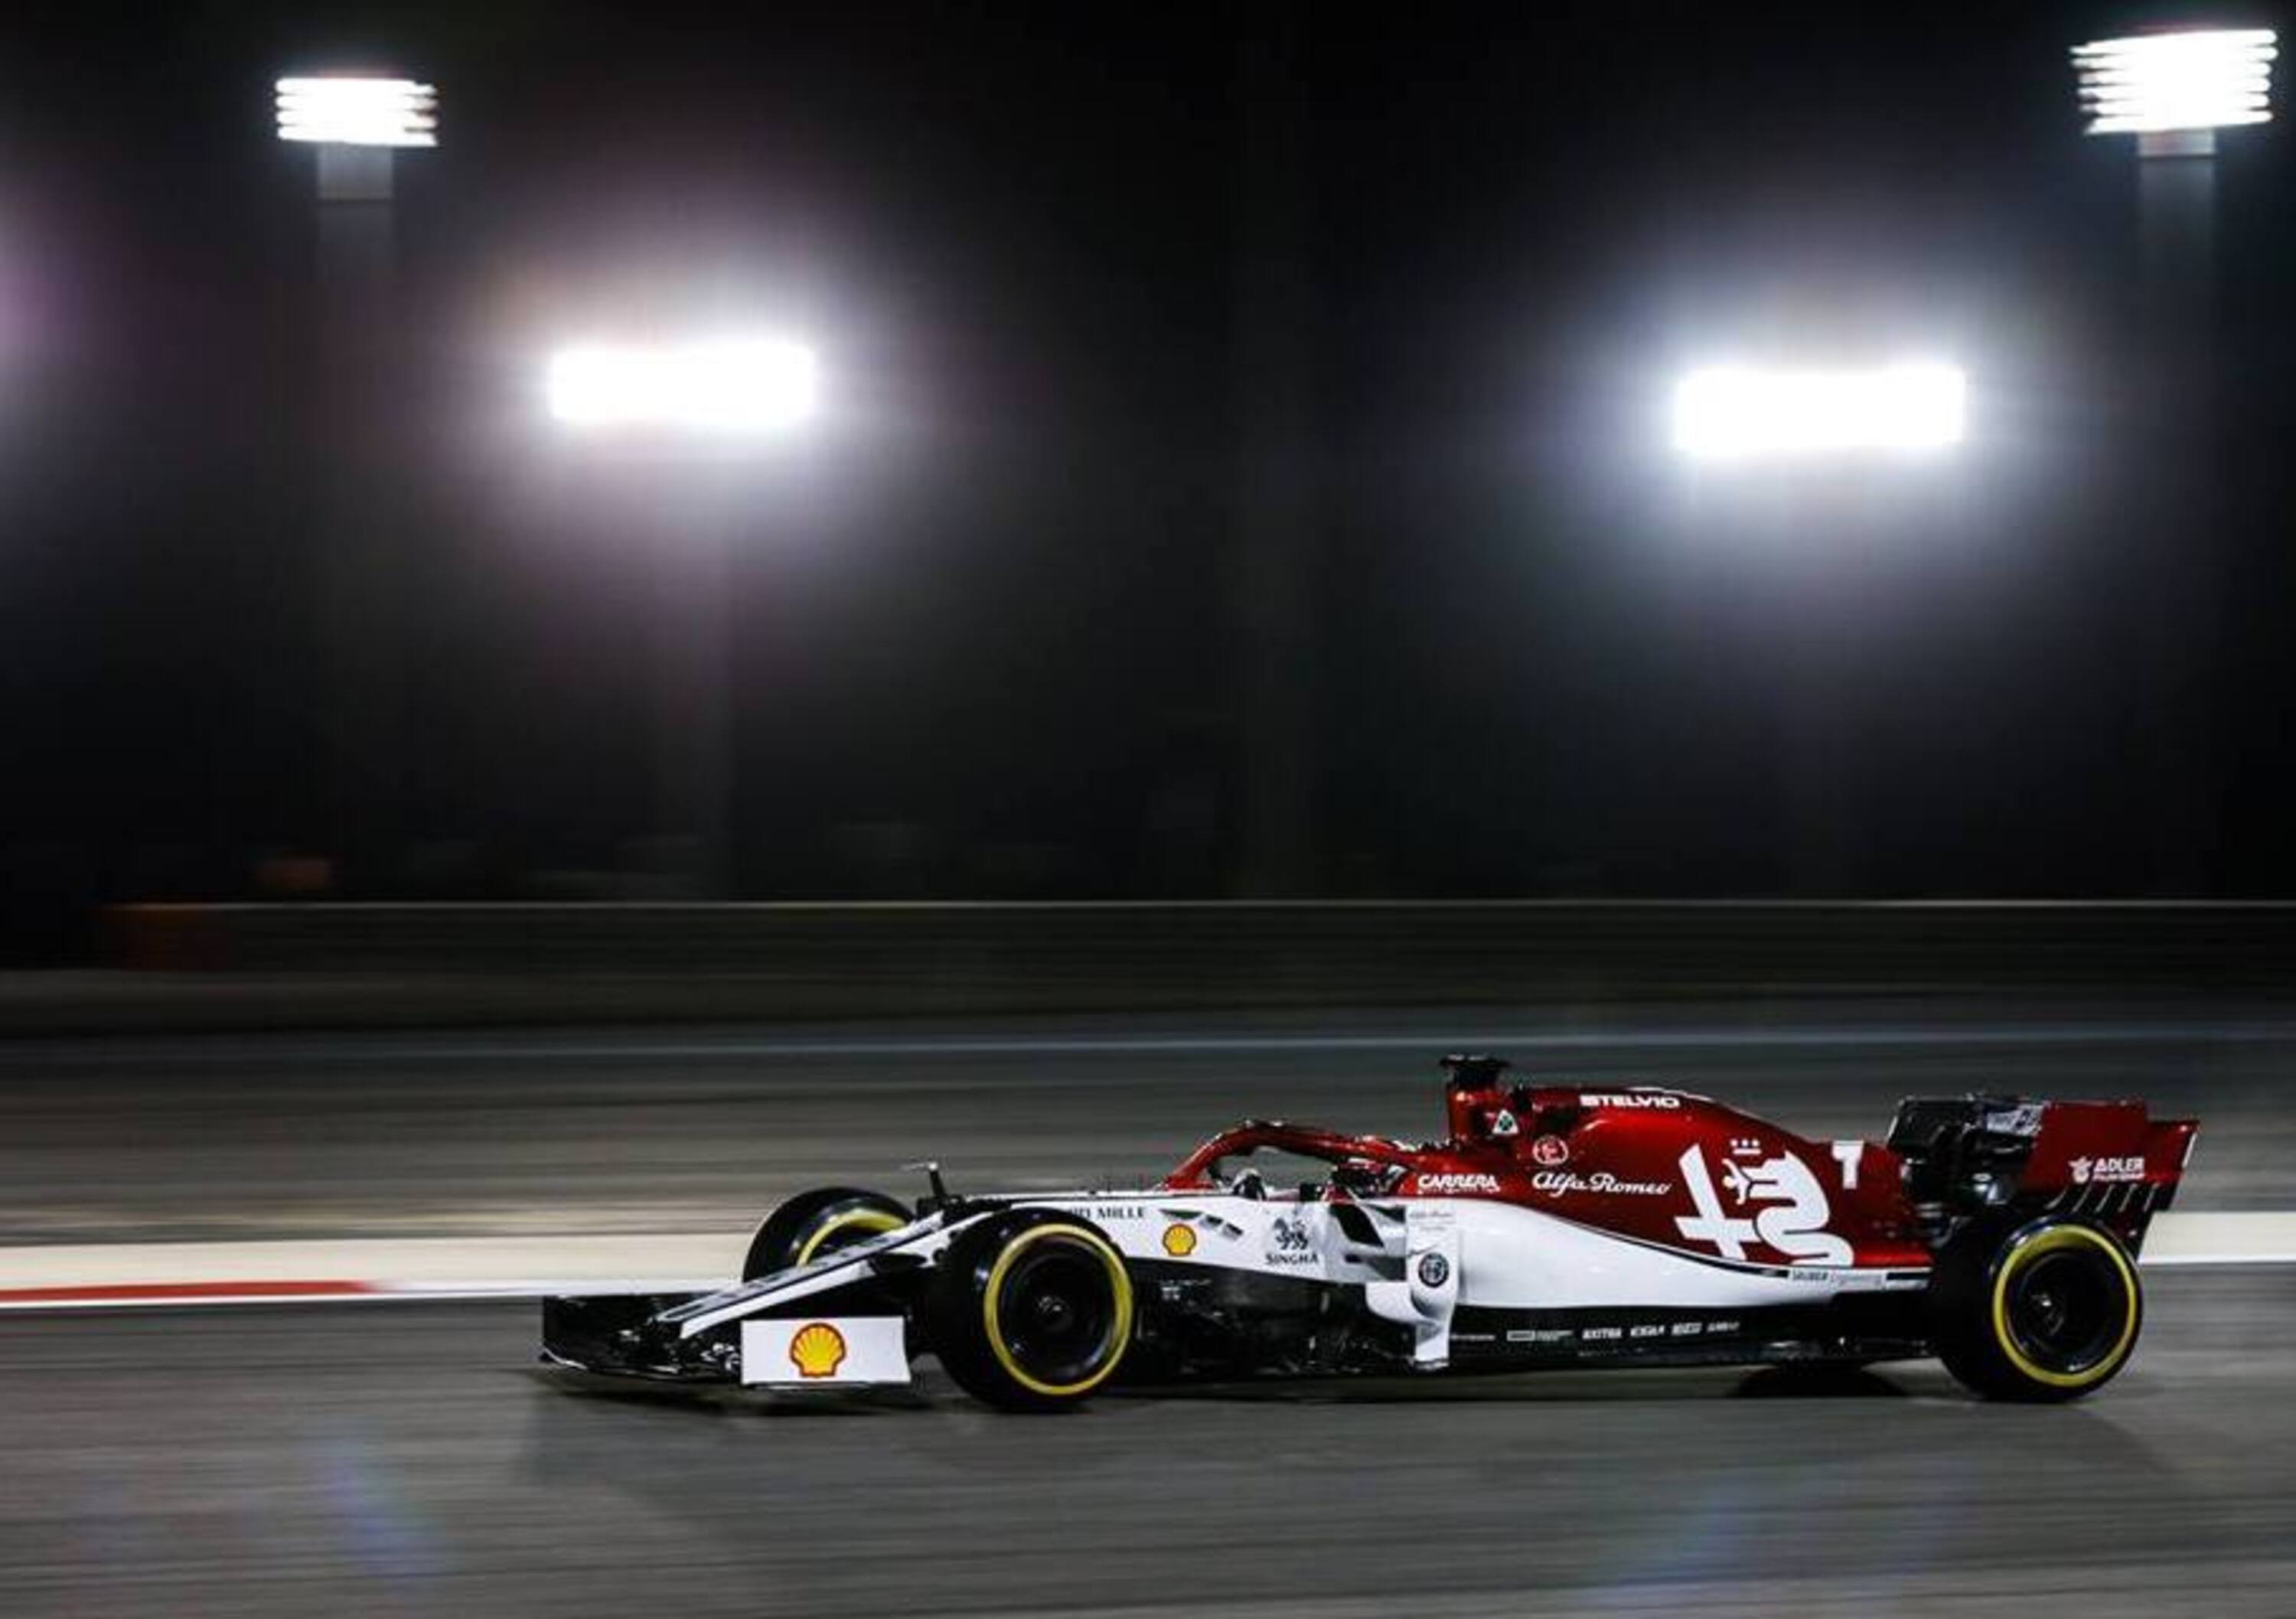 F1, GP Bahrain 2019, Raikkonen scherza: &laquo;Ho perso il talento&raquo;